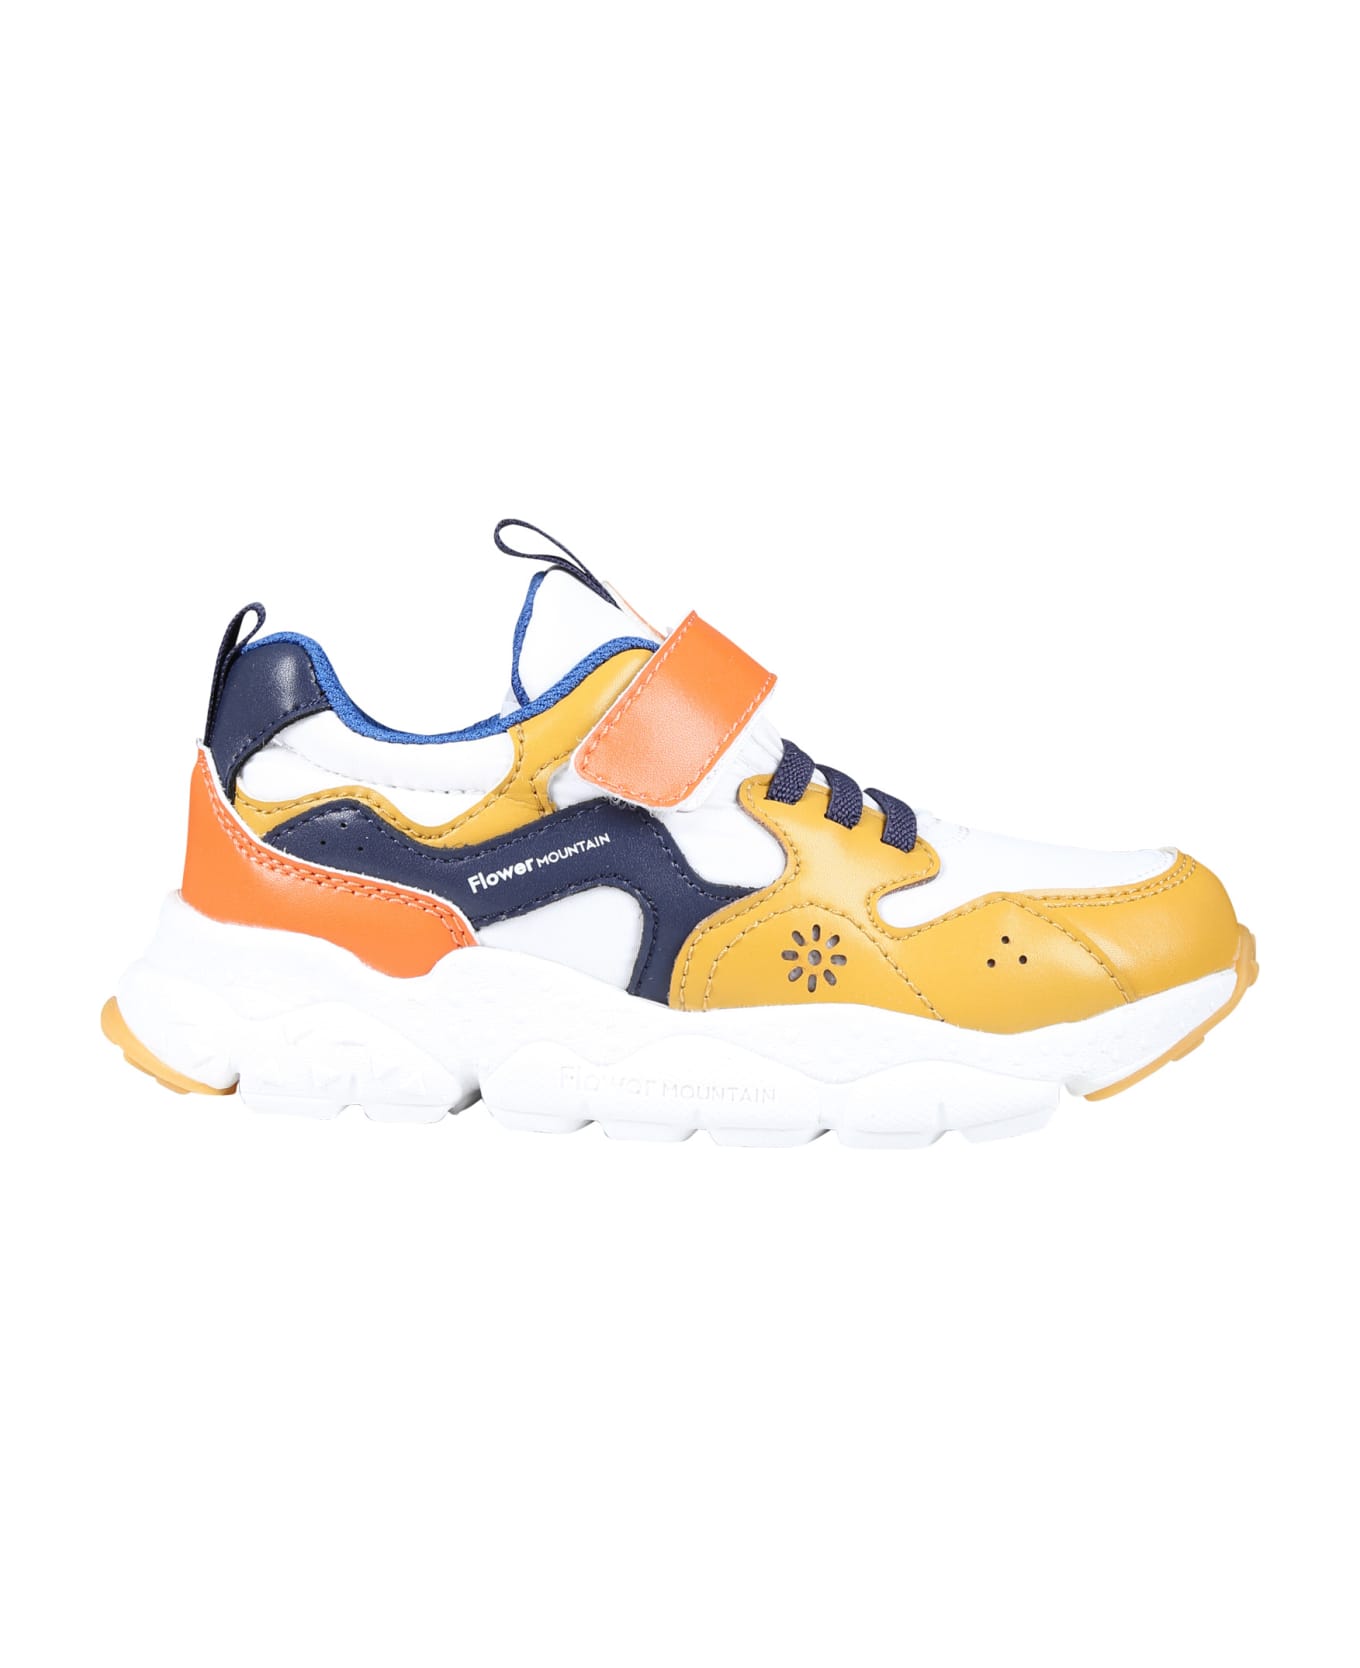 Flower Mountain Orange Yamano Low Sneakers For Boy - Orange シューズ